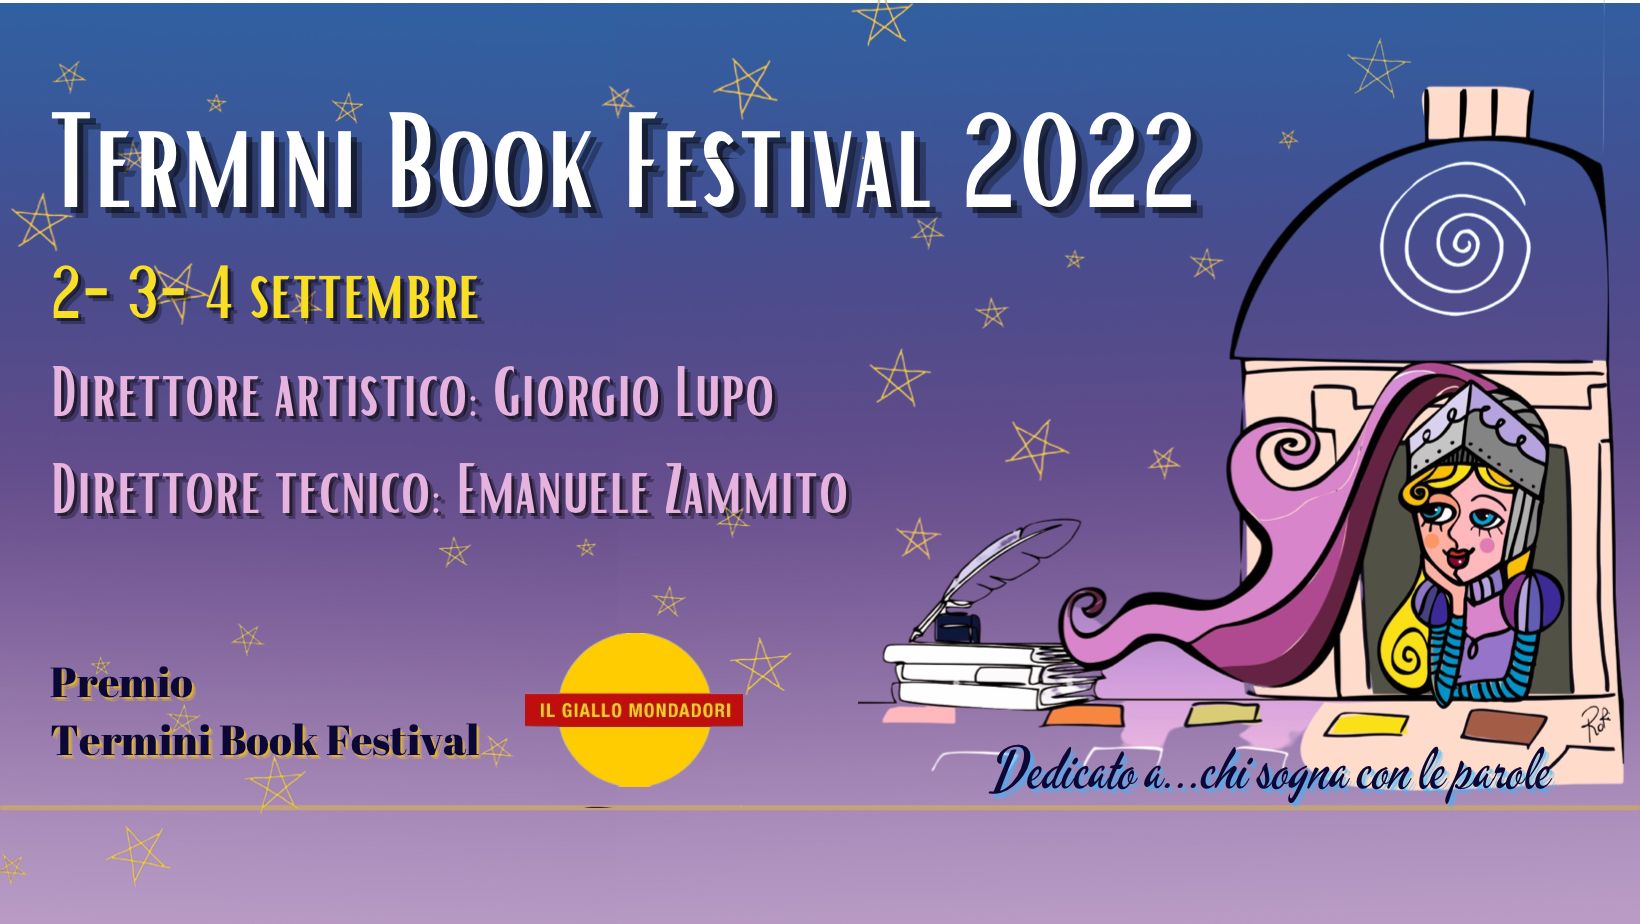 Termini Book Festival 2022